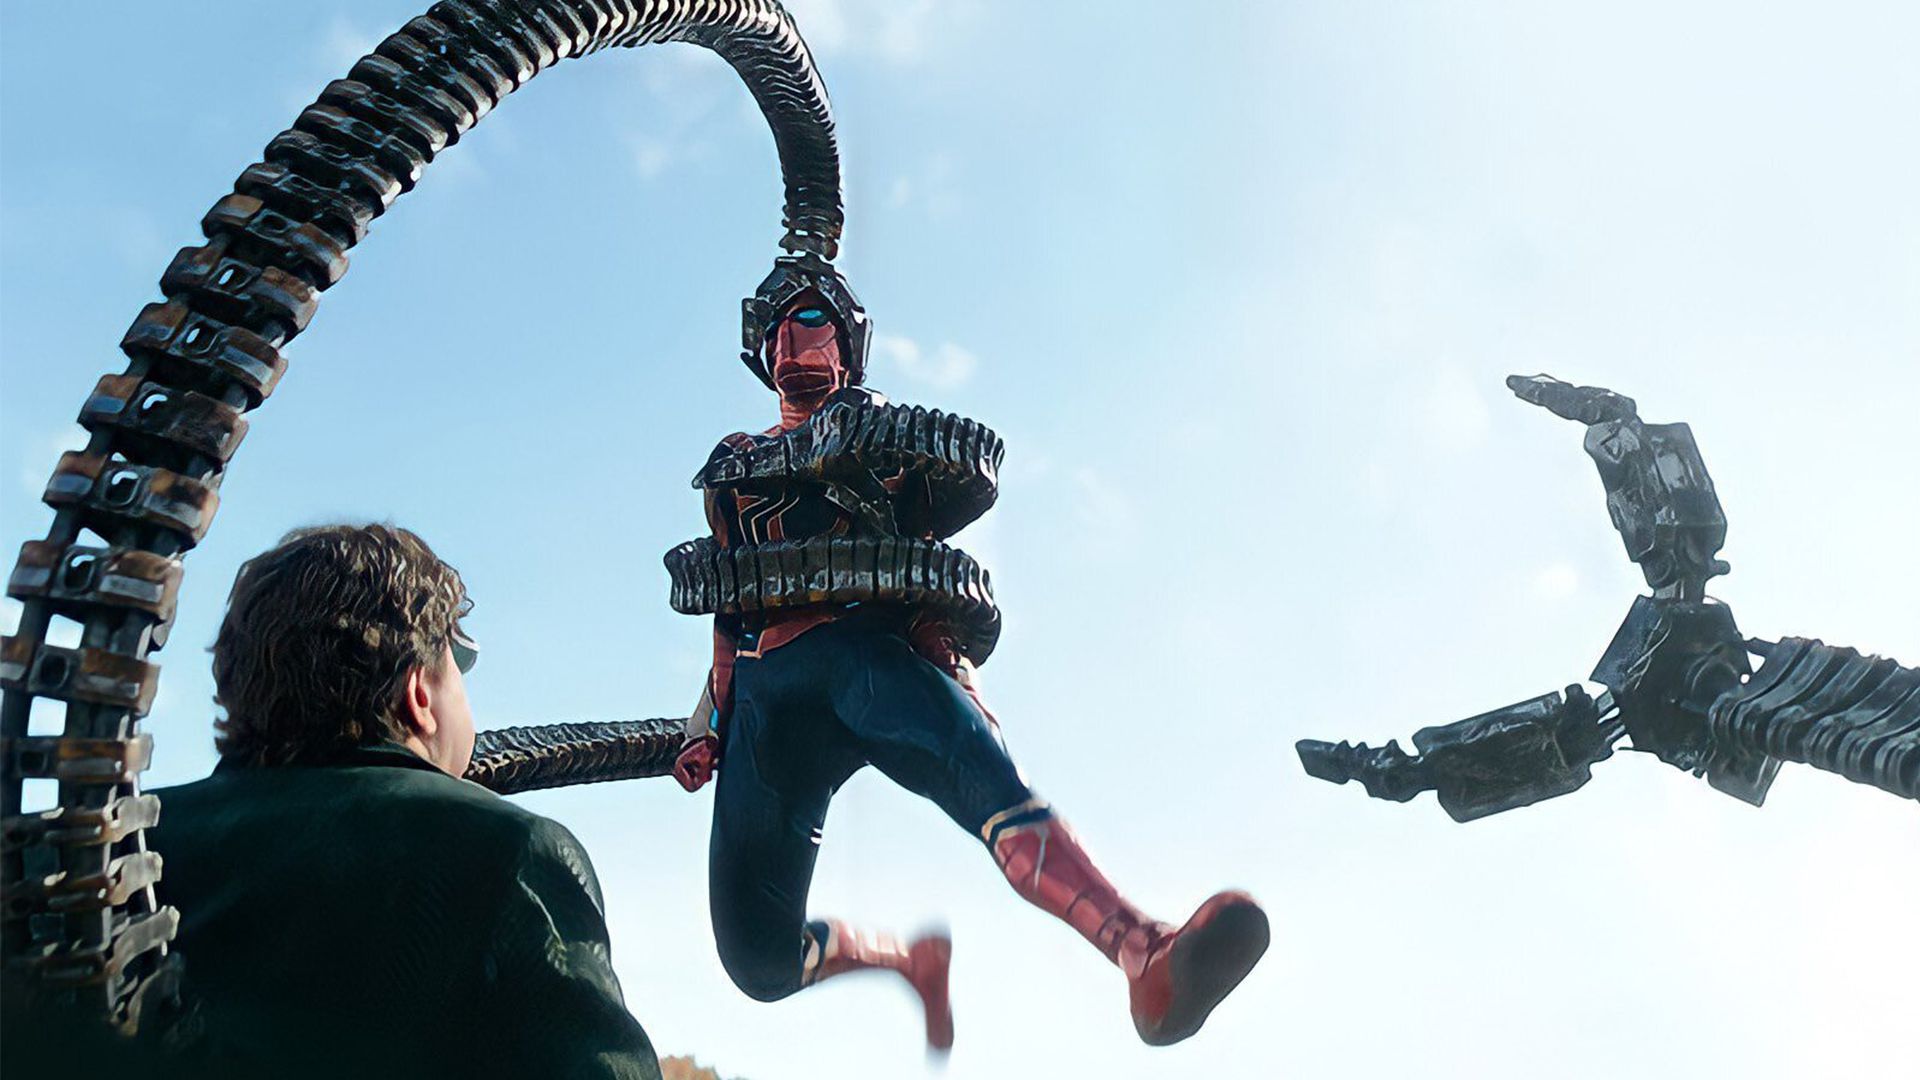 مرد عنکبوتی با بازی تام هالند با آیرون اسپایدر در چنگال دکتر اختاپوس با بازی آلفرد مولینا در فیلم Spider-Man: No Way Home